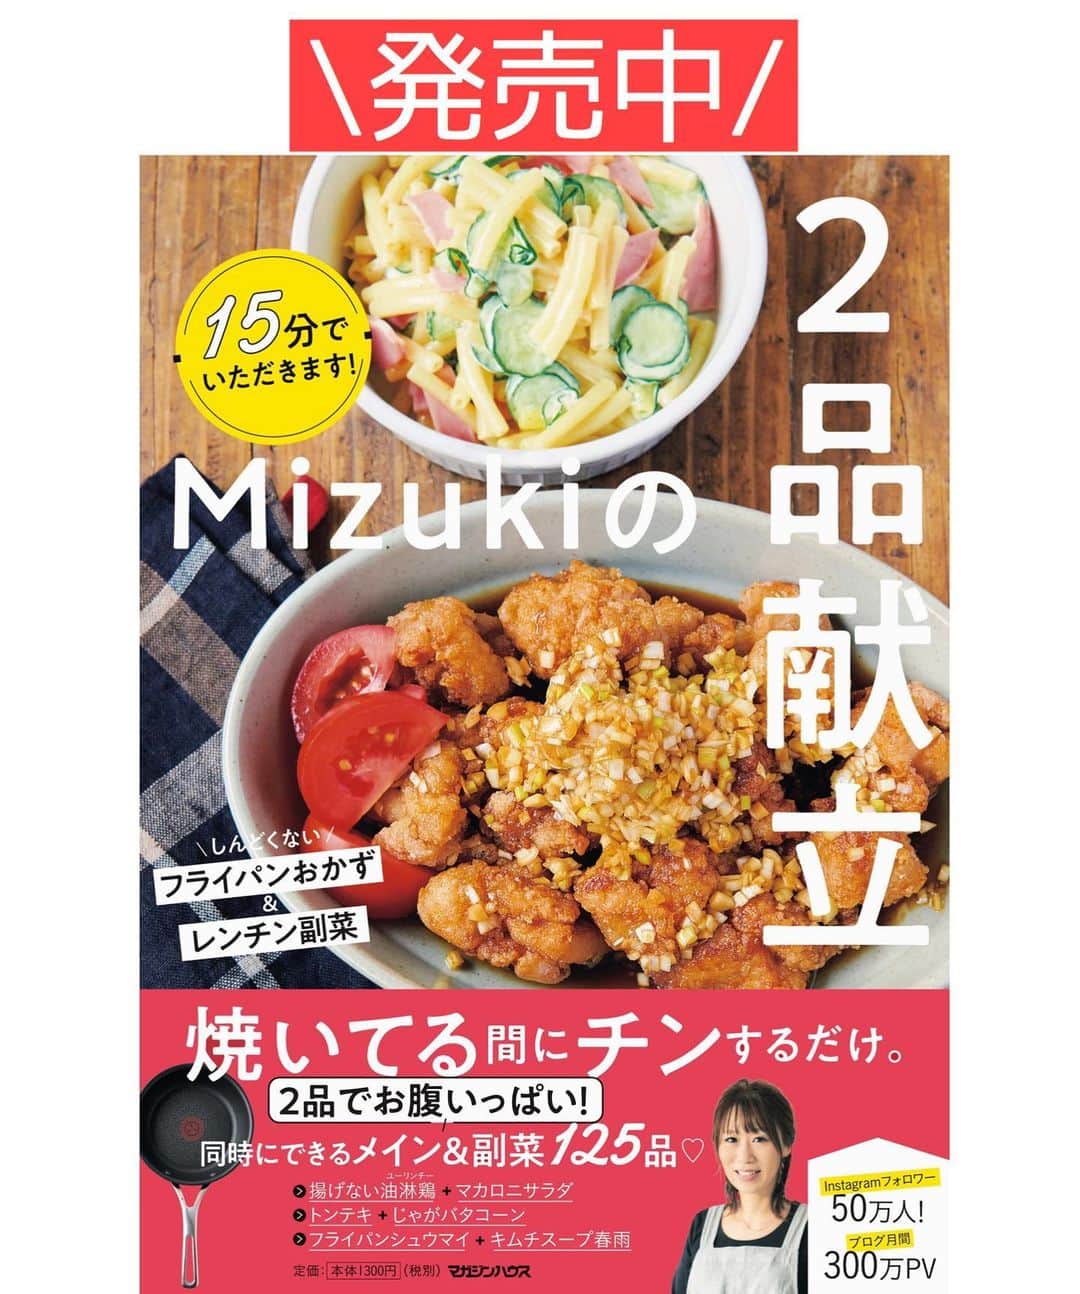 Mizuki【料理ブロガー・簡単レシピ】さんのインスタグラム写真 - (Mizuki【料理ブロガー・簡単レシピ】Instagram)「・﻿ 【#レシピ 】ーーーーーー﻿ ♡シーフードグラタン♡﻿ (2品献立提案あり)﻿ ーーーーーーーーーーーー﻿ ﻿ ﻿ ﻿ おはようございます(*^^*)﻿ ﻿ 今日ご紹介させていただくのは﻿ シーフードグラタン♡﻿ お手軽なシーフードミックスを使って﻿ 魚介の旨味たっぷりに仕上げました♩﻿ 生クリーム&ホワイトソース不要の﻿ 簡単時短レシピです(*´艸`)﻿ ﻿ 今回はグラタンにしましたが﻿ ごはんにかけてドリアにしたり﻿ マカロニを加えてもOK♡﻿ とっても簡単にできるので﻿ よかったらお試し下さいね(*^^*)﻿ ﻿ ﻿ ﻿ ＿＿＿＿＿＿＿＿＿＿＿＿＿＿＿＿＿＿＿＿﻿ 【2人分】﻿ 冷凍シーフードミックス...200g﻿ 玉ねぎ...1/4個﻿ しめじ...1/2袋﻿ バター...10g﻿ 薄力粉...大2﻿ 牛乳...350ml﻿ ●コンソメ...小1/2﻿ ●塩こしょう...少々﻿ ピザ用チーズ...60g﻿ (あれば)パセリ...適量﻿ ﻿ 1.シーフードミックスは流水に当てて半解凍して水気を切る。玉ねぎは薄切りにする。しめじはほぐす。﻿ 2.フライパンにバターを中火で熱して1を炒める。玉ねぎがしんなりしたら薄力粉を振り入れ、弱めの中火で1分炒める。﻿ 3.牛乳を3回に分けて加え、その都度よく混ぜる。●も加えてとろみが付くまで中火で煮る(4〜5分)。﻿ 4.耐熱皿に入れてチーズをのせ、トースターでチーズに焼き色が付くまで焼く。仕上げにパセリを振る。﻿ ￣￣￣￣￣￣￣￣￣￣￣￣￣￣￣￣￣￣￣￣﻿ ﻿ ﻿ ﻿ 《ポイント》﻿ ♦︎シーフードミックスを流水に当てるとすぐに半解凍できます♩﻿ ♦︎マカロニを加える場合は別茹でし、牛乳を入れ終わった後に加えて下さい♩﻿ ♦︎ごはんにかけて焼くとドリアになります♩﻿ ﻿ ﻿ ﻿ ﻿ ﻿ ﻿ ﻿ ＿＿＿＿＿＿＿＿＿＿＿＿＿＿＿﻿ 🥣🥣🥣2品献立提案🥣🥣🥣﻿ ￣￣￣￣￣￣￣￣￣￣￣￣￣￣￣﻿ 【合間に作れるおすすめ副菜】﻿ >トマトとアボカドのマリネ(P.90)﻿ >パプリカのピクルス(P.98)﻿ (#Mizukiの2品献立 より)﻿ ﻿ 【献立の段取り】﻿ マリネは和えてから、﻿ ピクルスはレンジに入れてから﻿ メインを加熱する🥢﻿ ﻿ ﻿ ﻿ ﻿ ﻿ ﻿ ﻿ ⭐️発売中⭐️3刷重版が決まりました😭﻿ 本当にありがとうございます(涙)﻿ _____________________________________﻿ \15分でいただきます/﻿ 📕#Mizukiの2品献立 📕﻿ (9月24日発売・マガジンハウス)﻿ ￣￣￣￣￣￣￣￣￣￣￣￣￣￣￣￣￣﻿ ﻿ 忙しい私たちには﻿ 2品くらいがちょうどいい！﻿ 『しんどくない献立、考えました』﻿ ￣￣￣￣￣￣￣￣￣￣￣￣￣￣￣￣﻿ ﻿ ーーーーーPART.1 ーーーーー﻿ 【Mizukiのお墨つき！２品献立ベスト10】﻿ 約15分でできる10献立をご紹介！﻿ メインは全部フライパン、副菜はレンチンor混ぜるだけ♡﻿ ﻿ ーーーーーPART.2 ーーーーー﻿ 【フライパンひとつ！今夜のメインおかず】﻿ 献立の主役になる肉や魚のおかず50品！﻿ Part3の副菜と組み合わせれば﻿ 献立のバリエーションが広がりますよ♩﻿ ﻿ ーーーーー PART.3 ーーーーー﻿ 【合間に作れる！ 野菜別かんたん副菜】﻿ レンチンor和えるだけの副菜レシピを﻿ 素材別にたっぷり収録♩﻿ ﻿ ーーーーー番外編ーーーーー﻿ 【ひとつで満足！ご飯＆麺】﻿ 【具だくさん！おかずスープ】﻿ 【オーブンいらずのおやつレシピ】﻿ ￣￣￣￣￣￣￣￣￣￣￣￣￣￣￣￣￣￣﻿ (ハイライトにリンク🔗あります💗)﻿ ﻿ ﻿ ﻿ ﻿ ＿＿＿＿＿＿＿＿＿＿＿＿＿＿＿＿＿＿﻿ 🔔テレビ出演のお知らせ🔔﻿ 10月12日〜22日までの2週間(月〜木)﻿ 【NHK Eテレ まる得マガジン 】が﻿ 再放送されています☺️﻿ 俳優の武田航平さん﻿ (@kouhei_takeda.official )と一緒に﻿ 絶品おやつから意外なランチまで﻿ たくさん作らせていただきますよ♩﻿ ﻿ ＊NHKテキスト発売中です📕﻿ ￣￣￣￣￣￣￣￣￣￣￣￣￣￣￣￣￣￣﻿ ﻿ ﻿ ﻿ ﻿ ﻿ レシピを作って下さった際や﻿ レシピ本についてのご投稿には﻿ タグ付け( @mizuki_31cafe )して﻿ お知らせいただけると嬉しいです😊💕﻿ ﻿ ﻿ ﻿ ﻿ ﻿ ﻿ #グラタン#シーフードミックス#チーズ#Mizuki#簡単レシピ#時短レシピ#節約レシピ#料理#フーディーテーブル#マカロニメイト#おうちごはん#デリスタグラマー#料理好きな人と繋がりたい#食べ物#料理記録#おうちごはんlover#写真好きな人と繋がりたい#foodpic#cooking#recipe#lin_stagrammer#foodporn#yummy#f52grams#シーフードグラタンm」10月17日 7時34分 - mizuki_31cafe